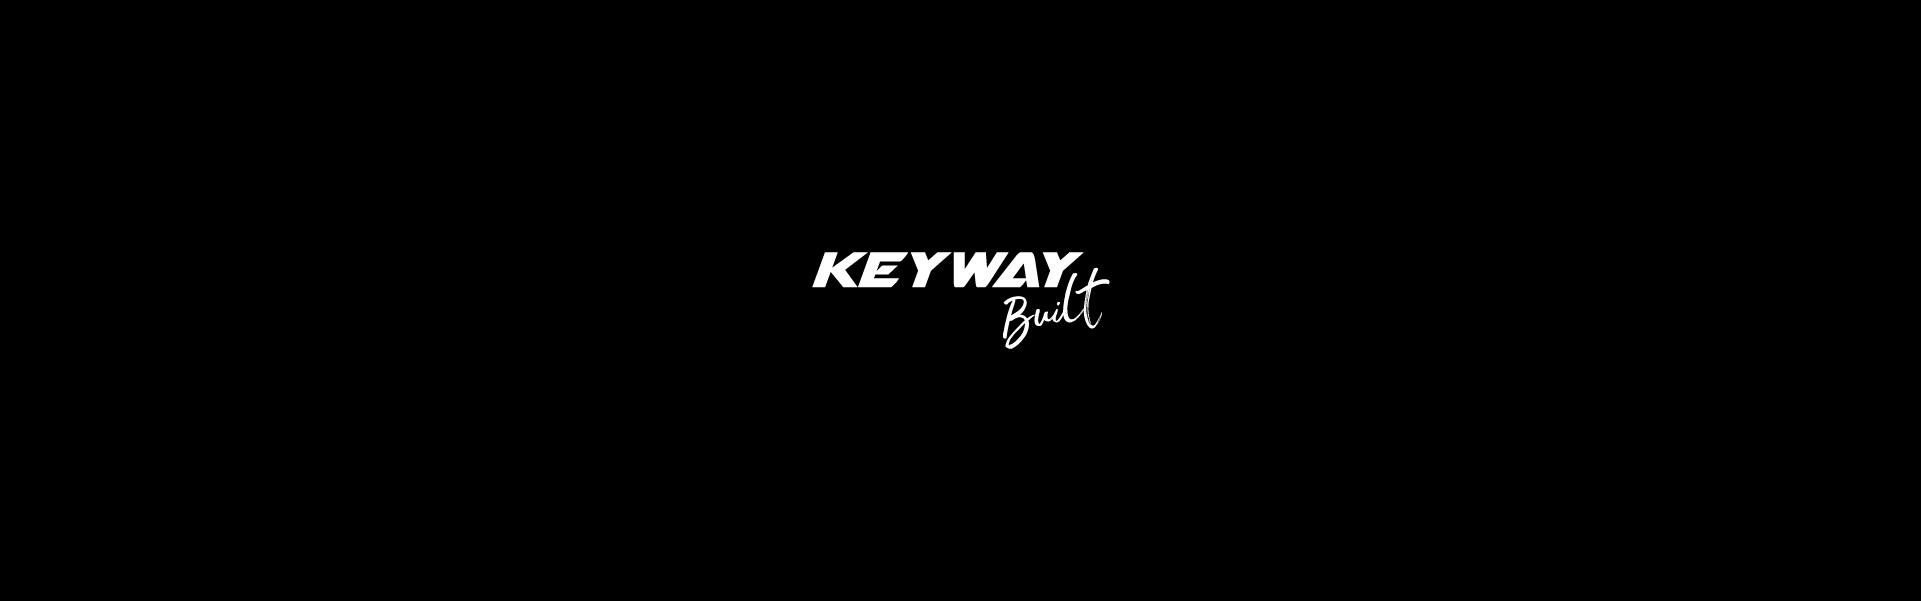 Keyway Built